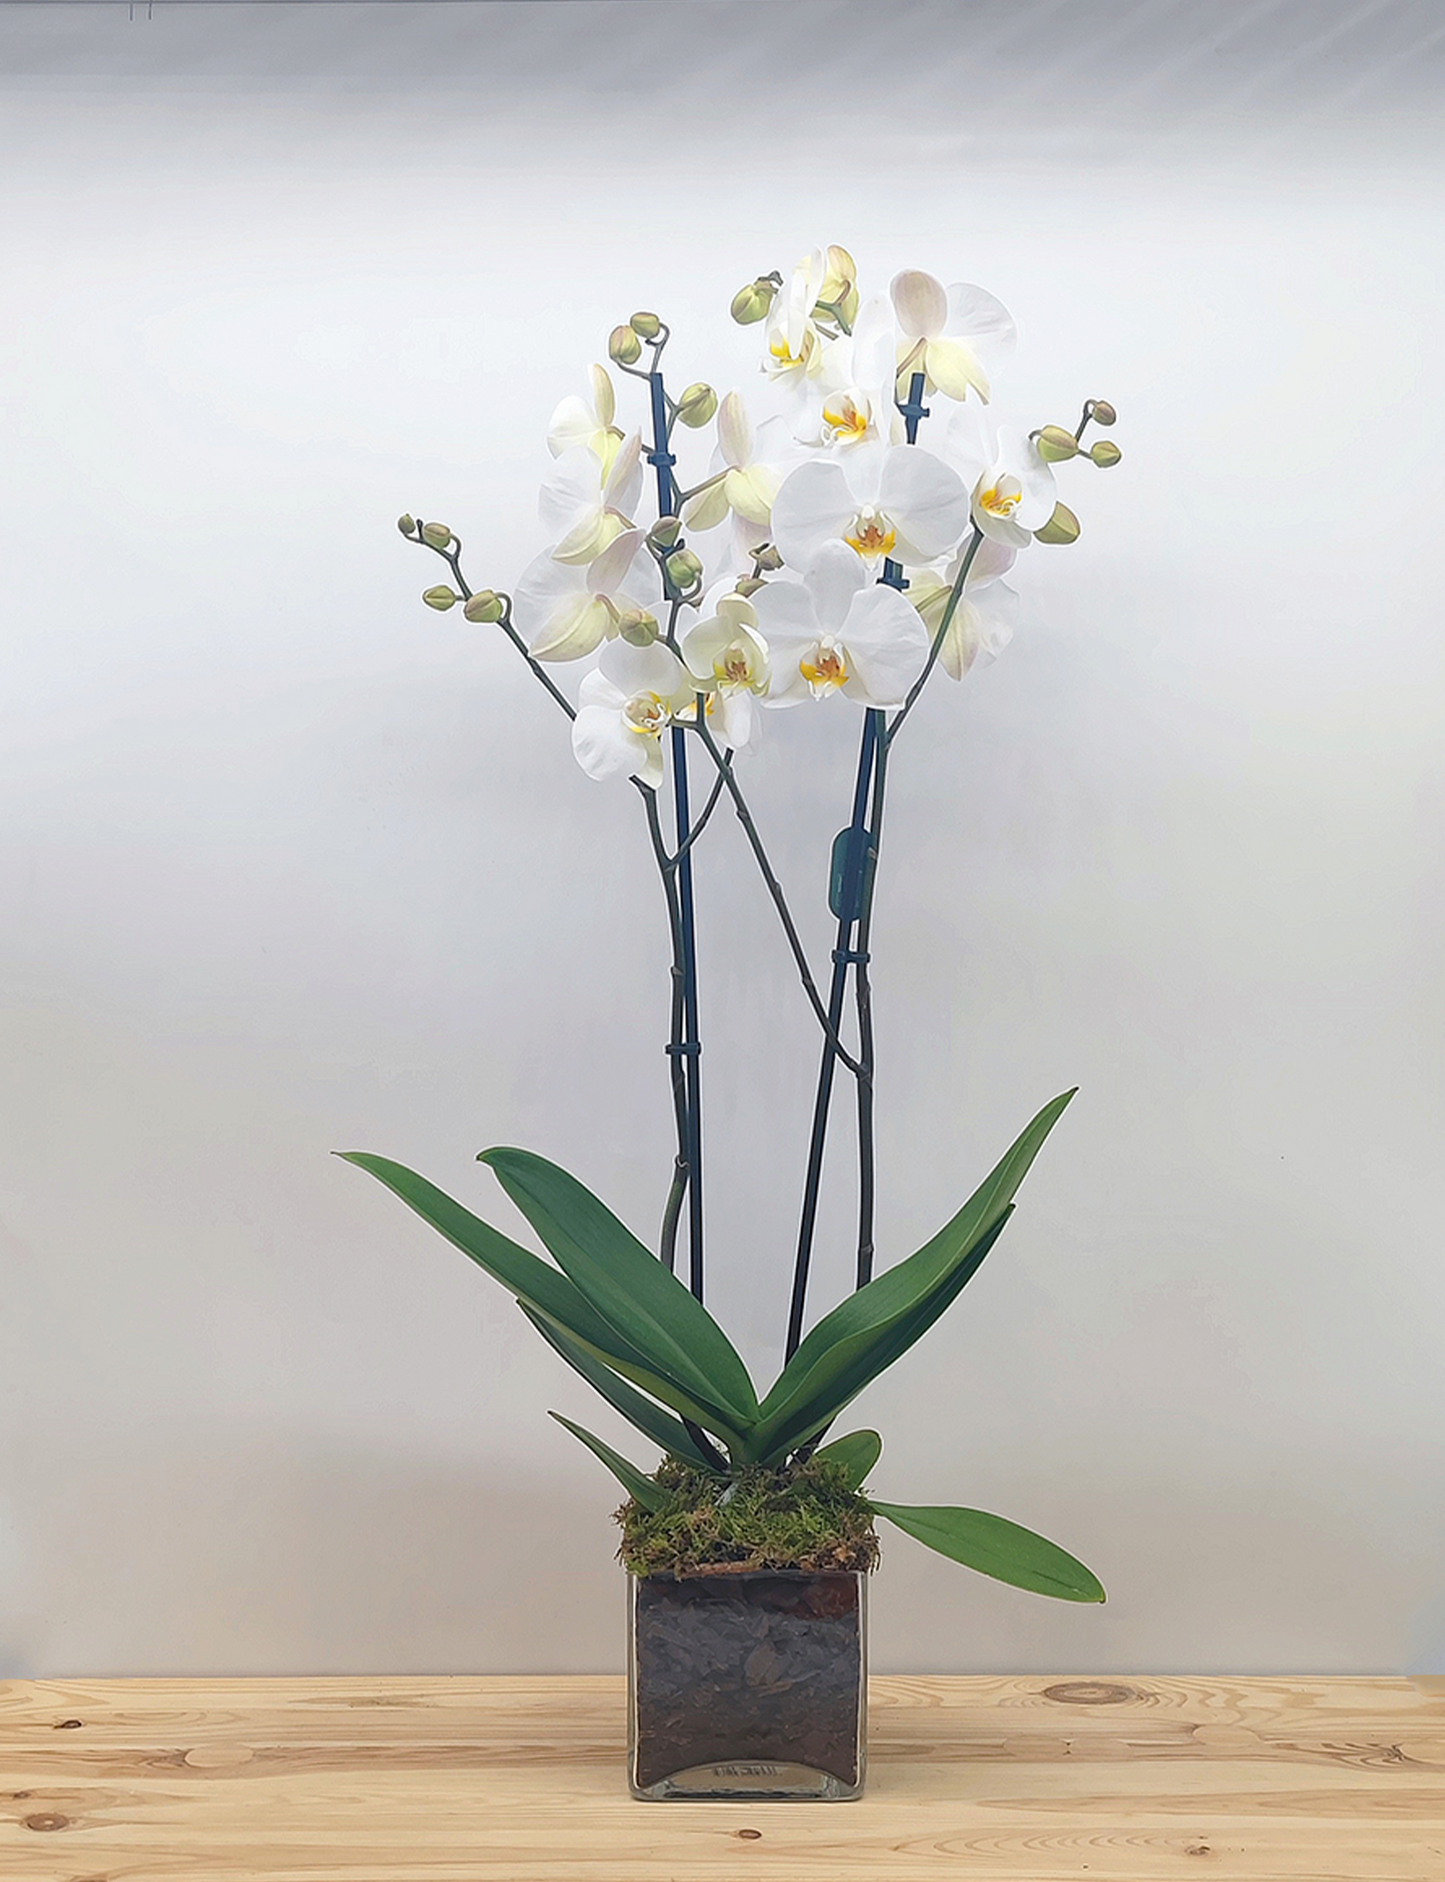 Orquídea en cristal